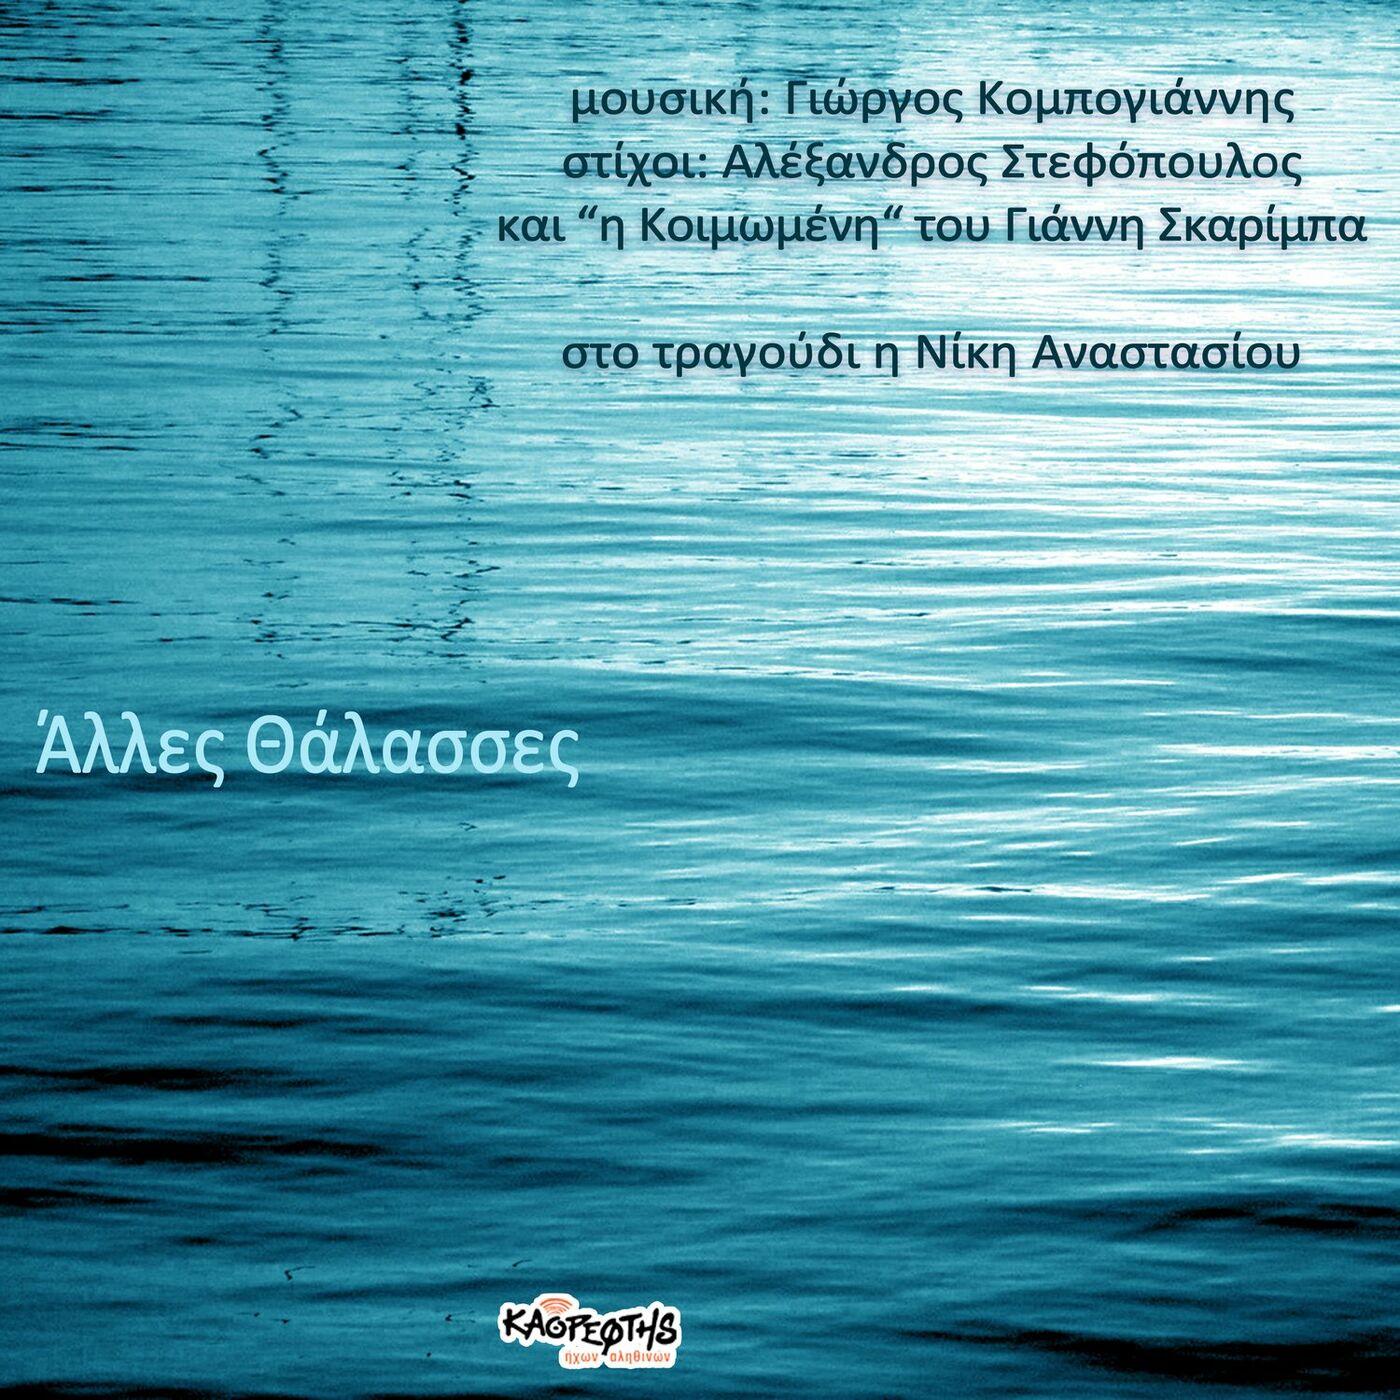 Άλλες Θάλασσες, μουσική Γιώργος Κομπογιάννης / στίχοι Αλέξανδρος Στεφόπουλος